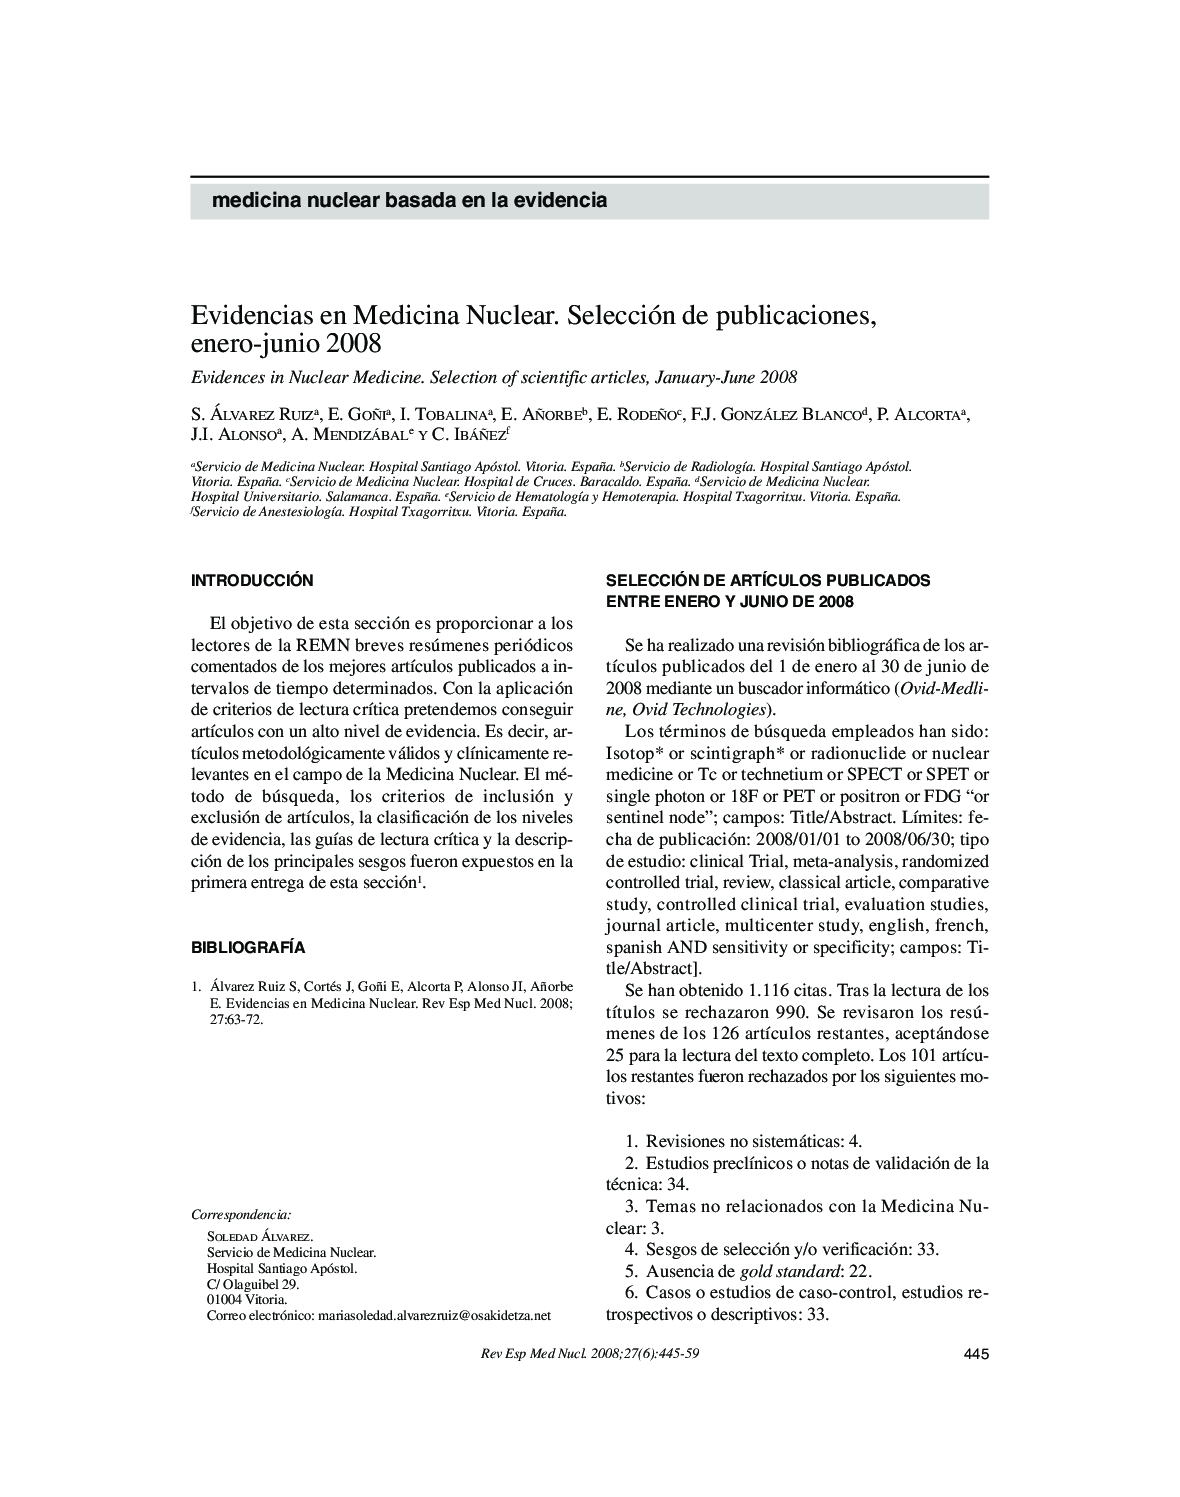 Evidencias en Medicina Nuclear. Selección de publicaciones, enero-junio 2008